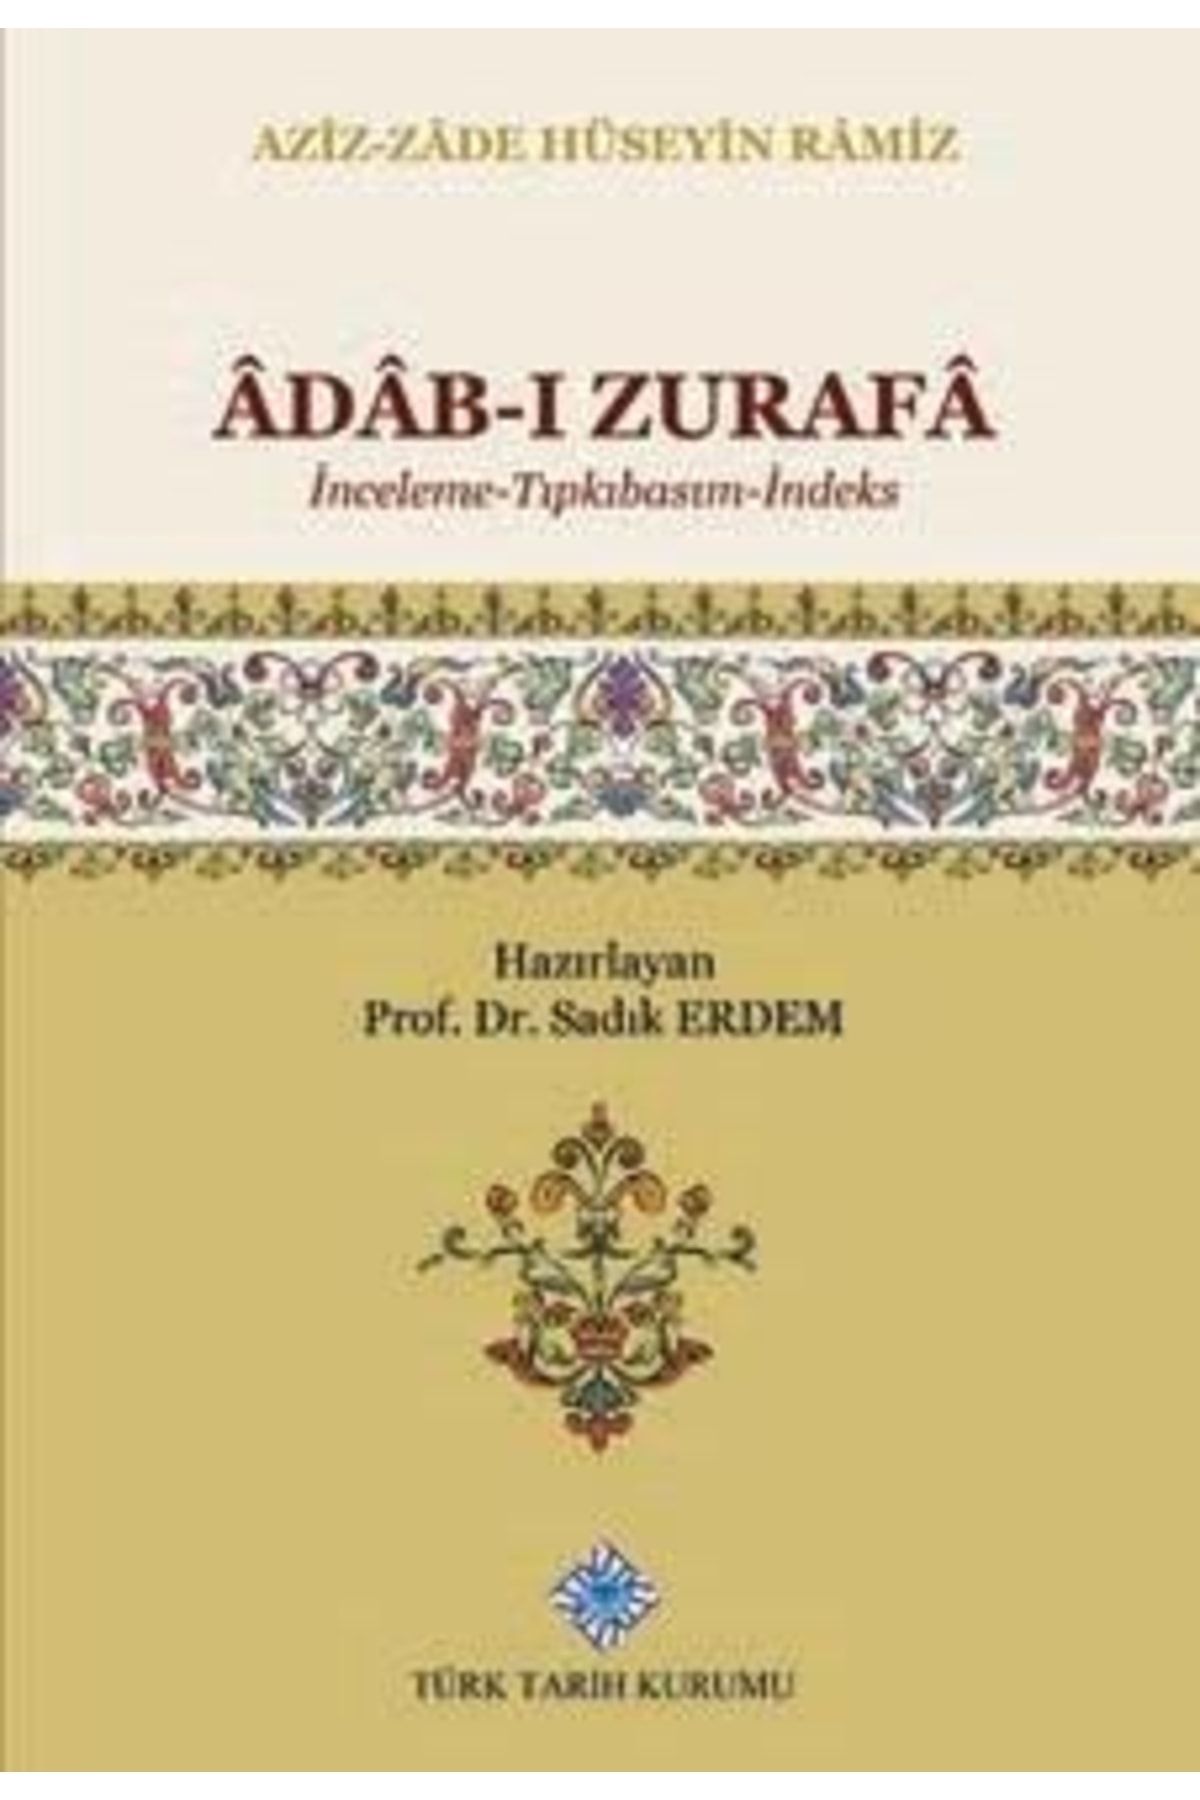 Türk Tarih Kurumu Yayınları Âdâb-ı Zurafâ (inceleme-tıpkıbasım-indeks), 2019